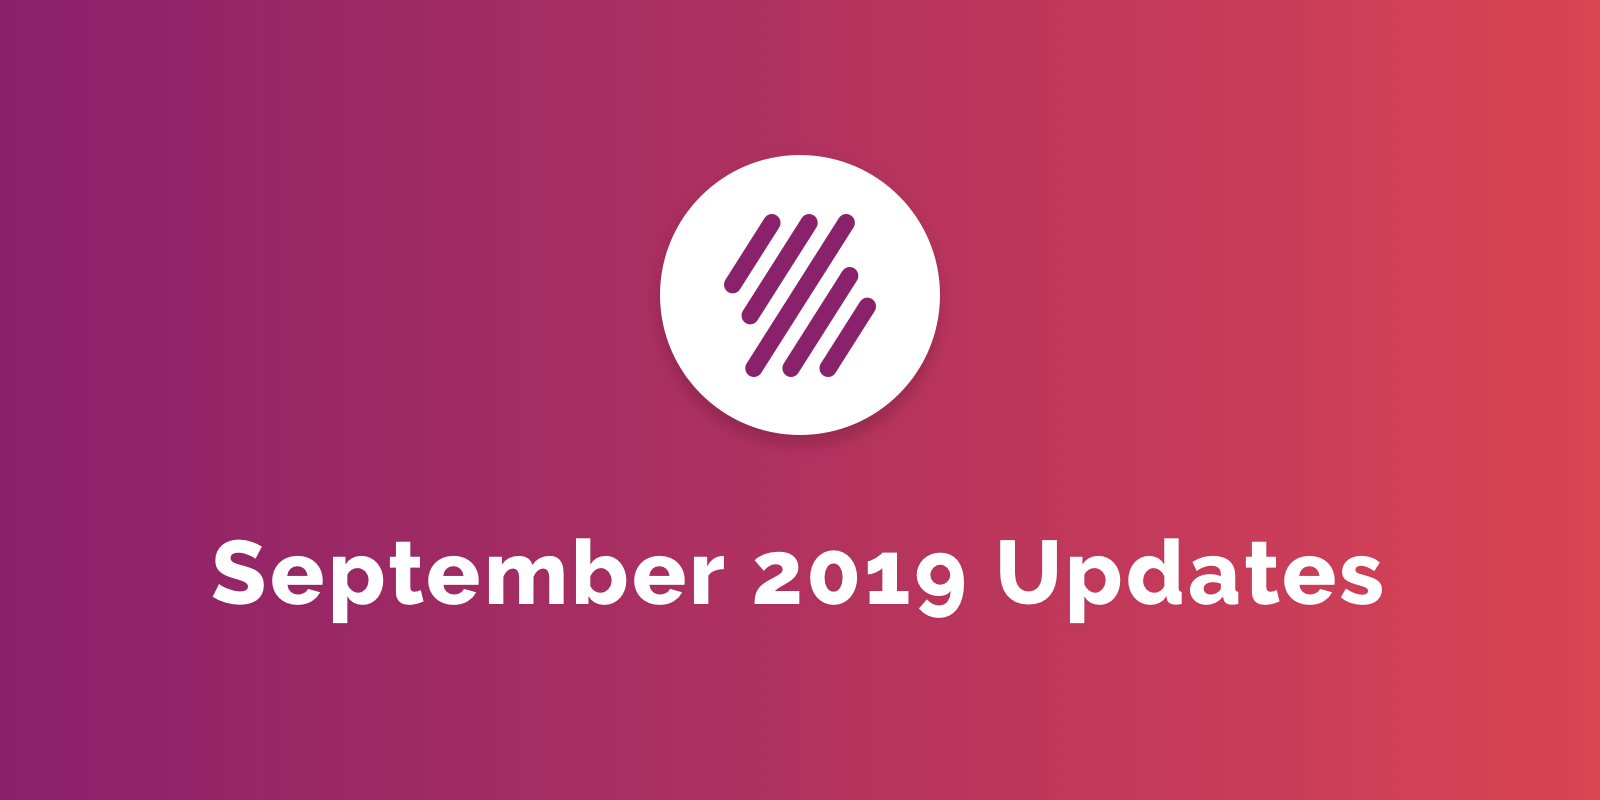 September 2019 Updates